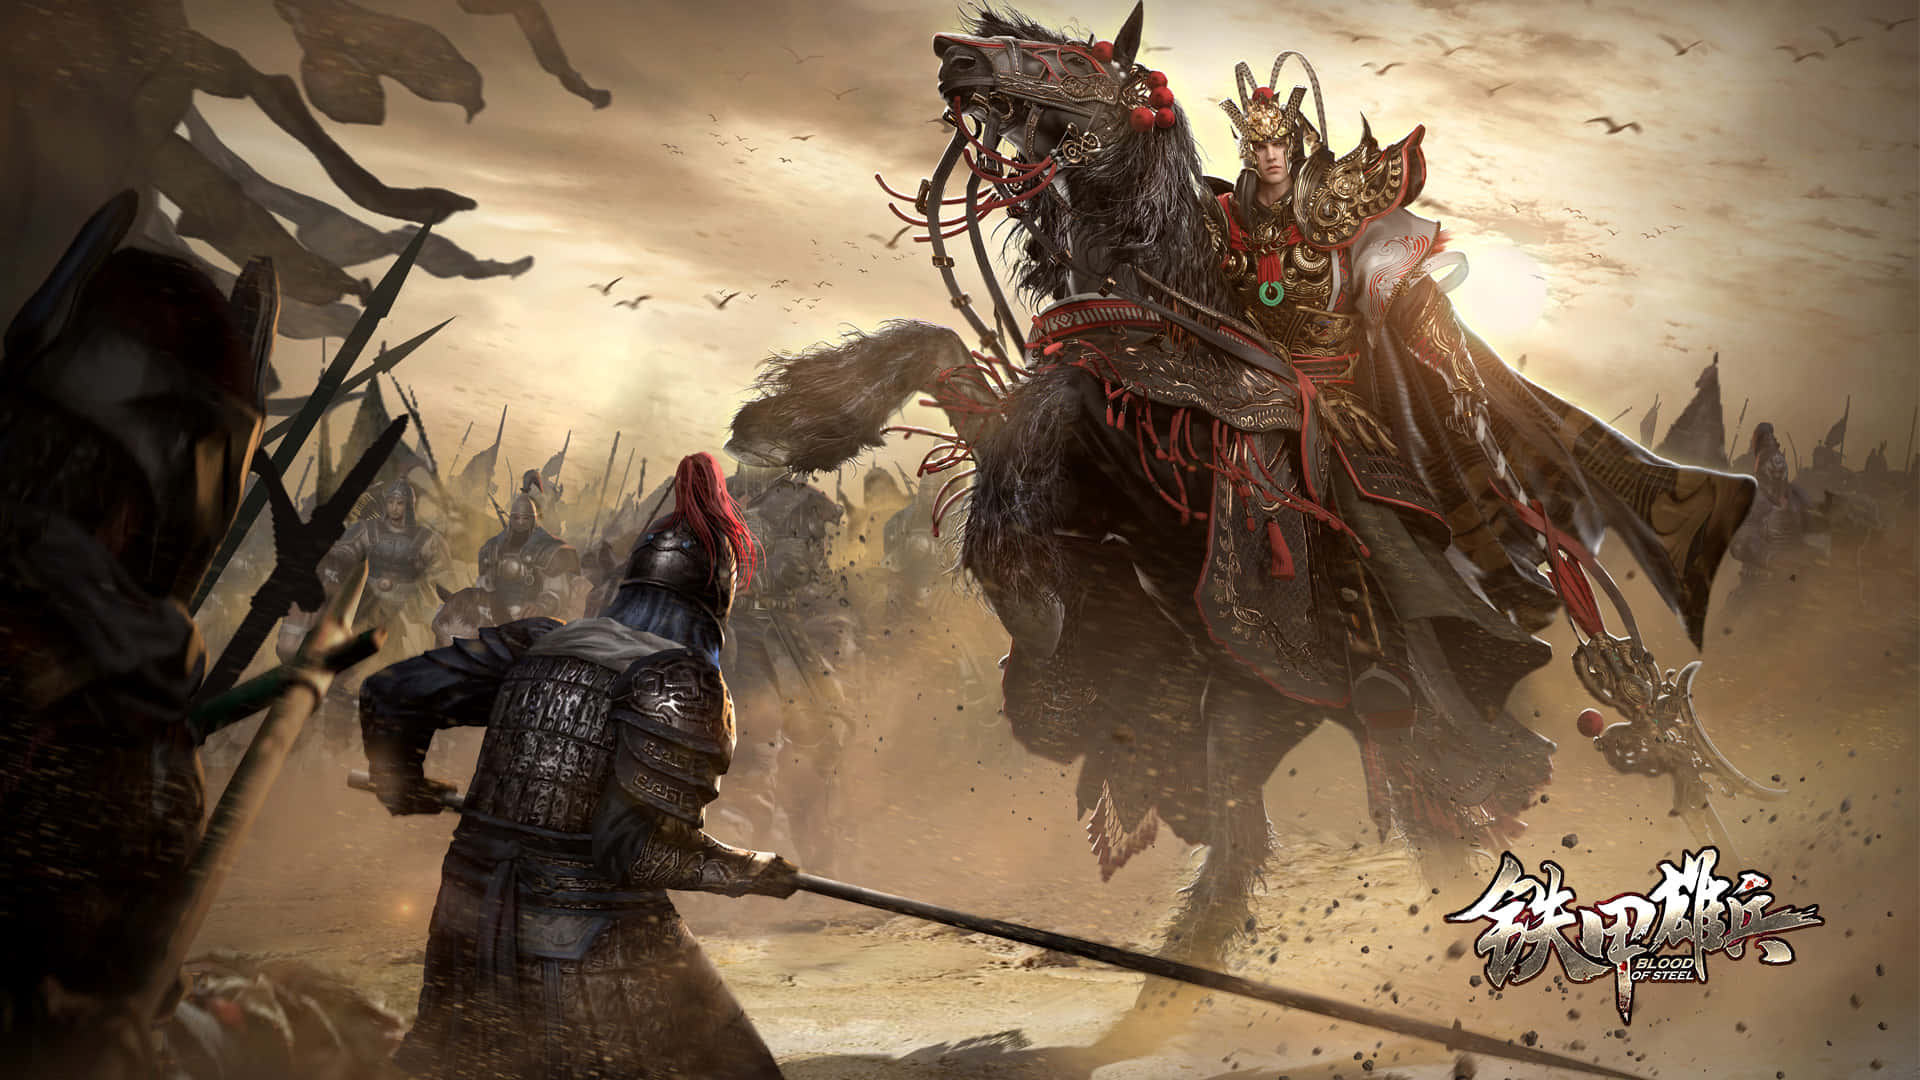 Blood of Steel Epic Battle Scene Wallpaper Wallpaper